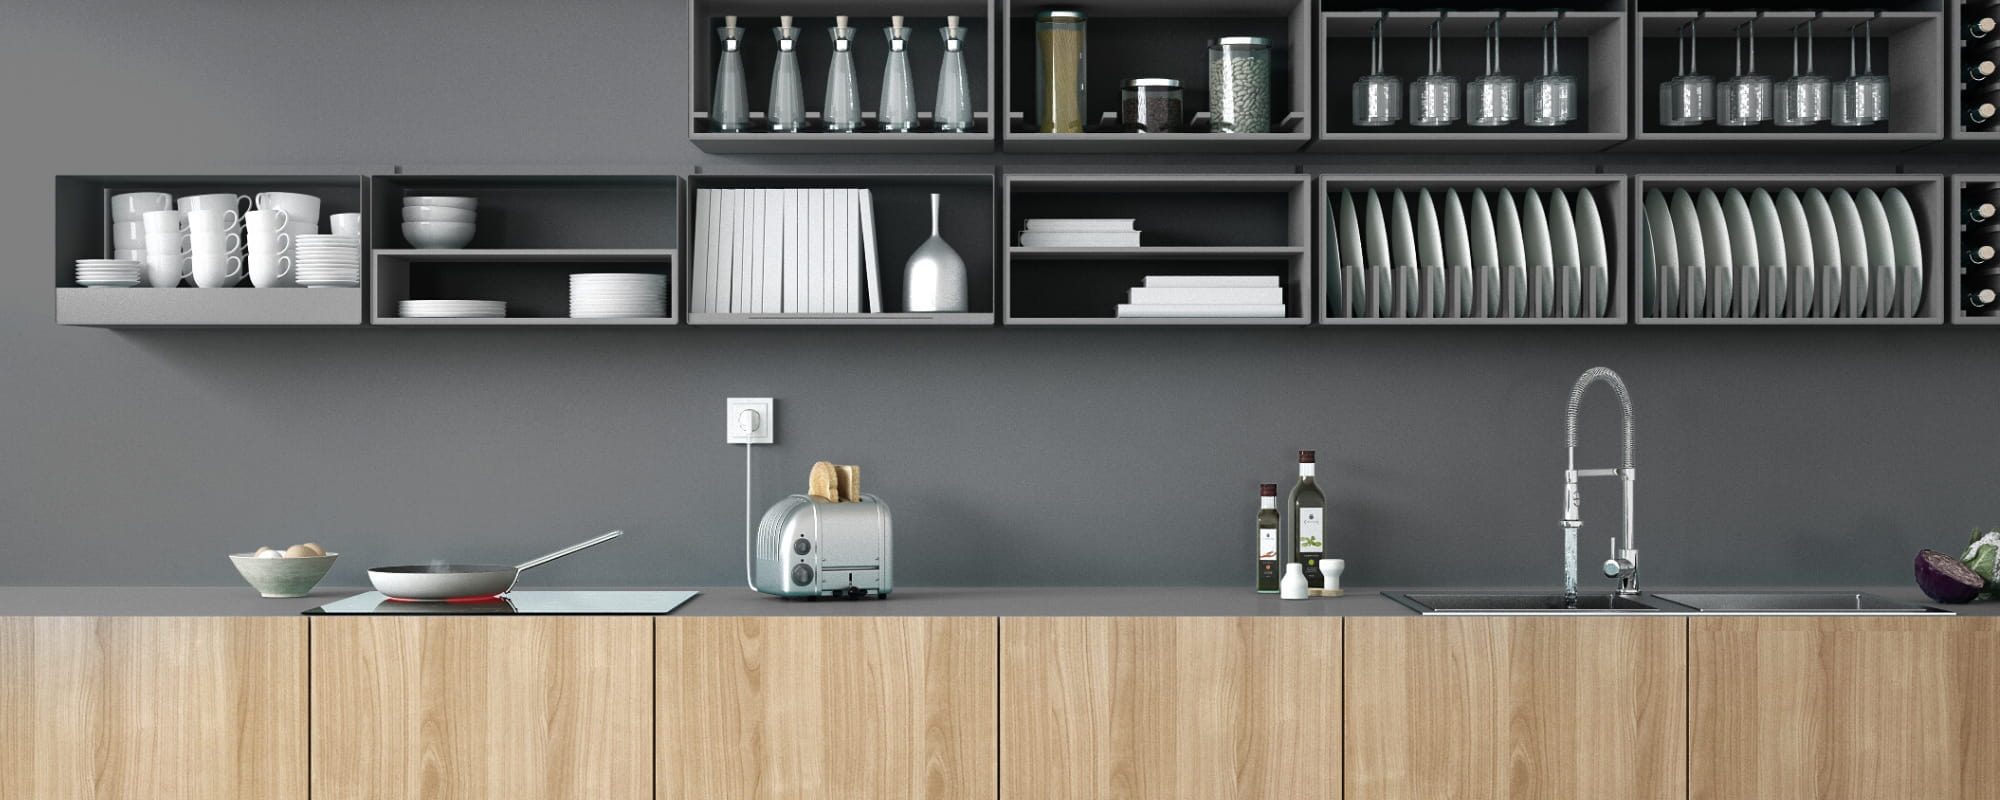 modern cabinets in modern kitchen